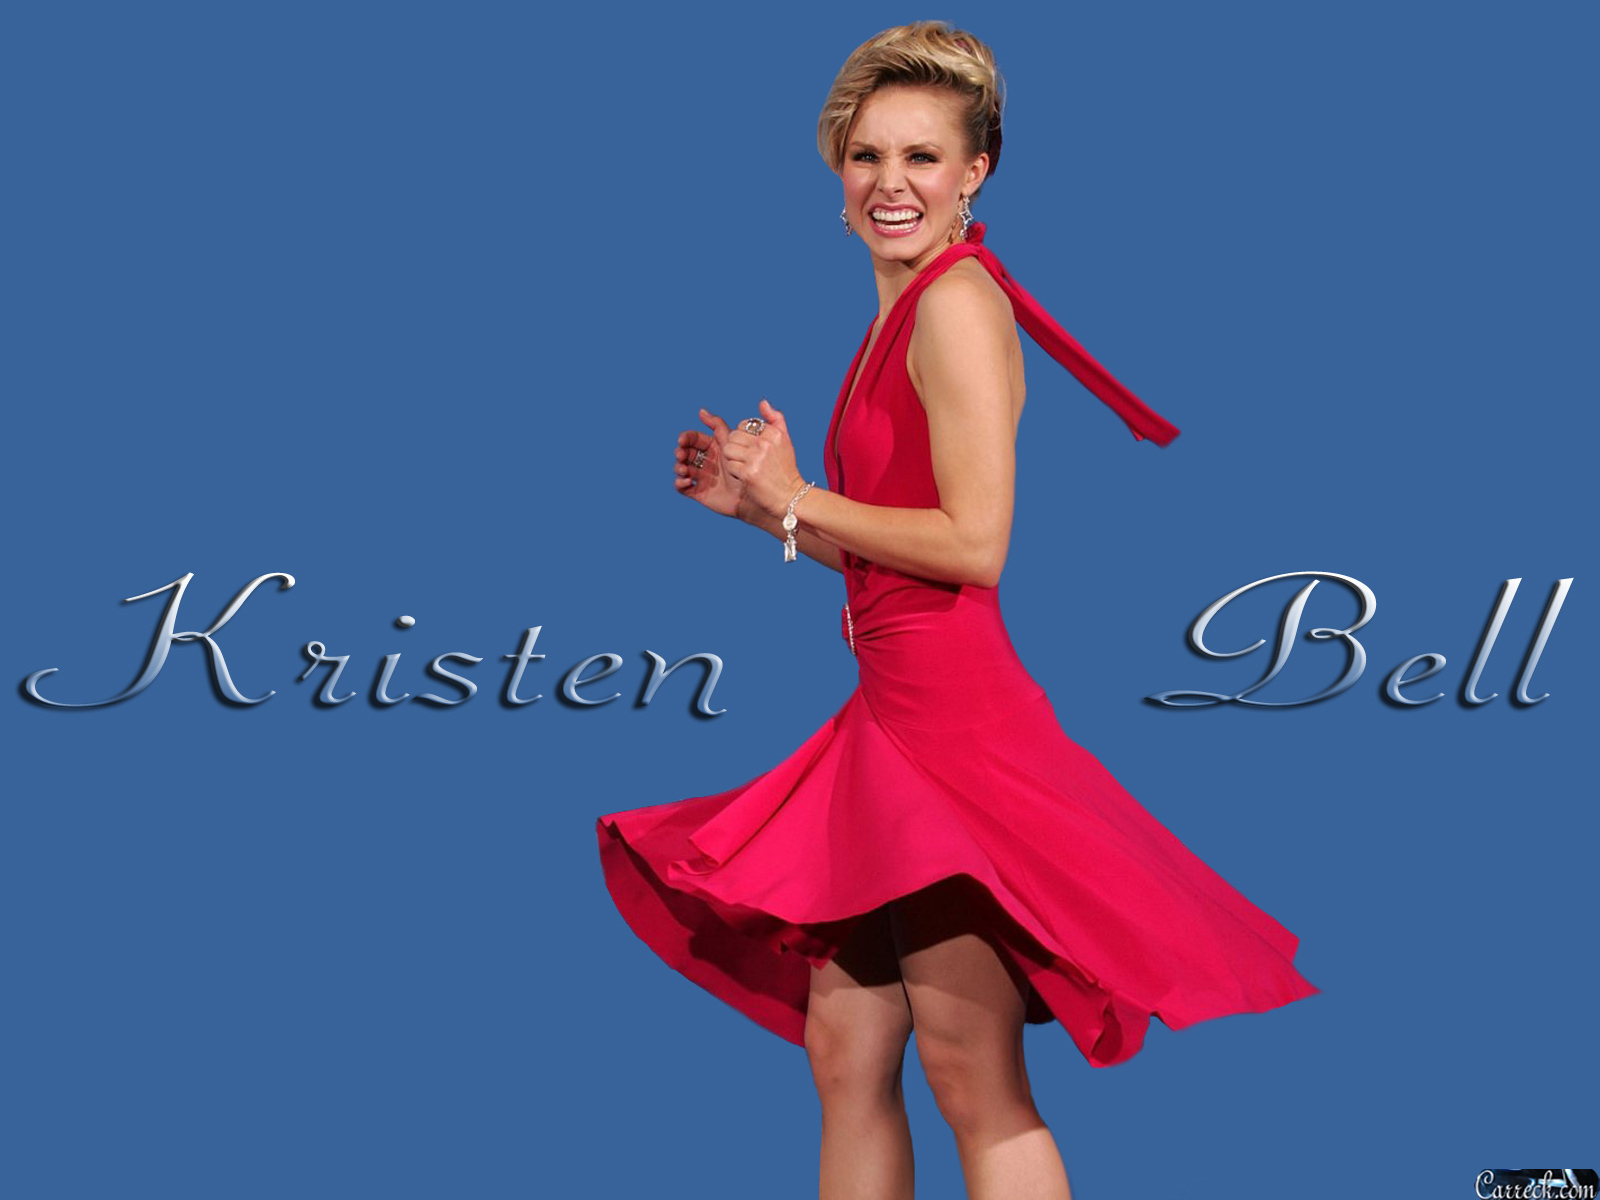 Kristen Bell - Kristen Bell Wallpaper (4889310) - Fanpop